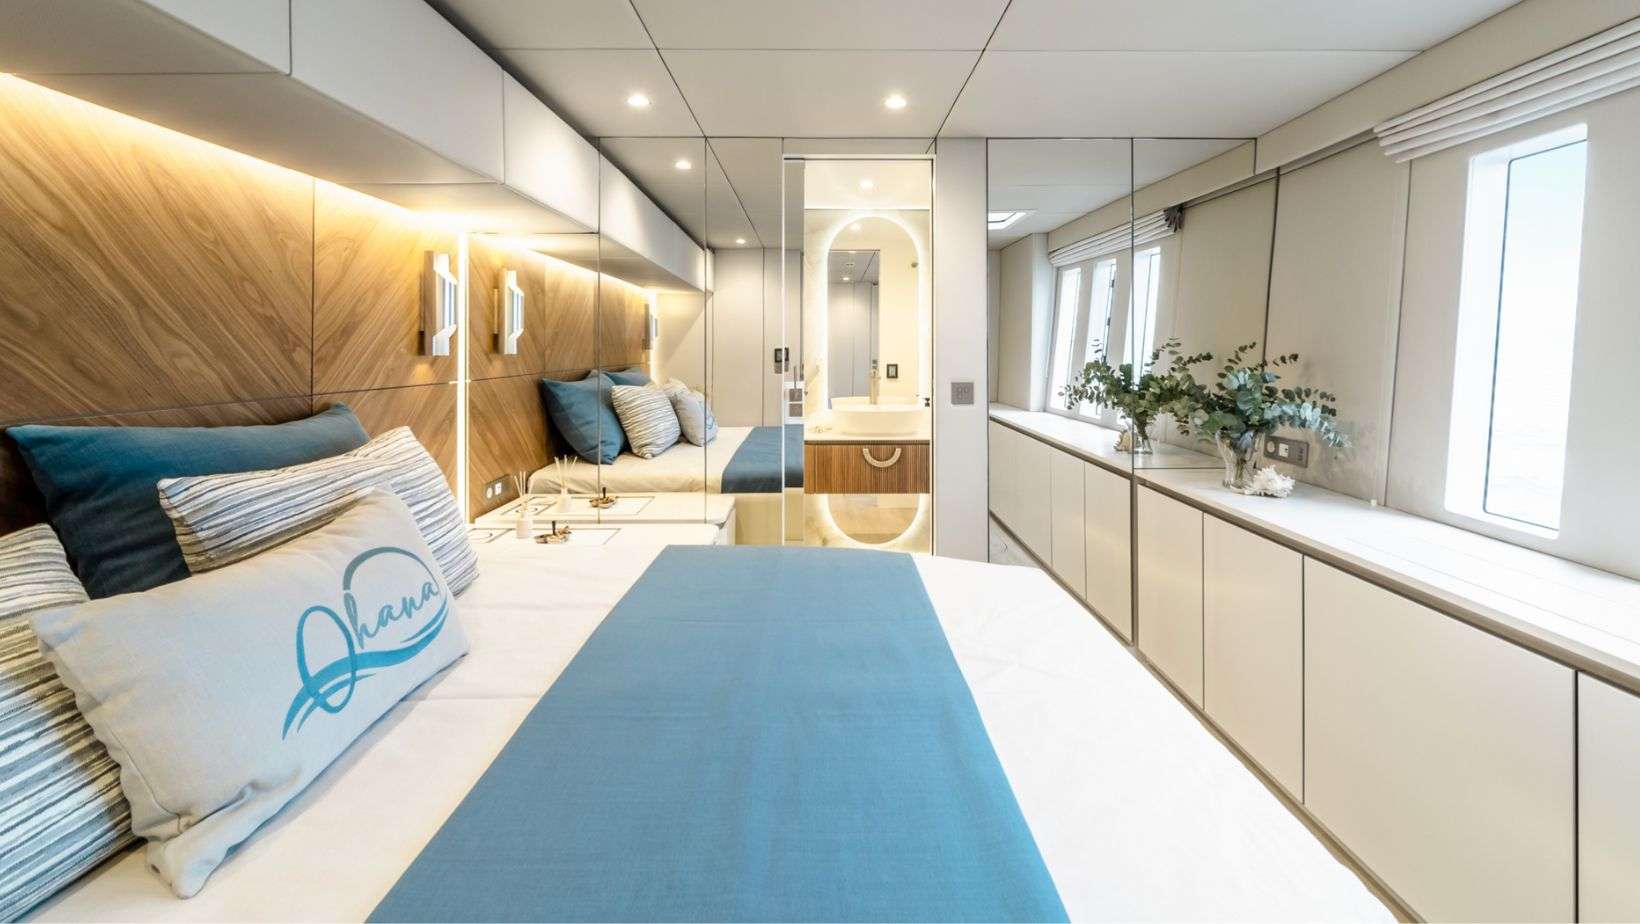 OHANA Yacht Charter - Shipyard Rendering Guest Cabin